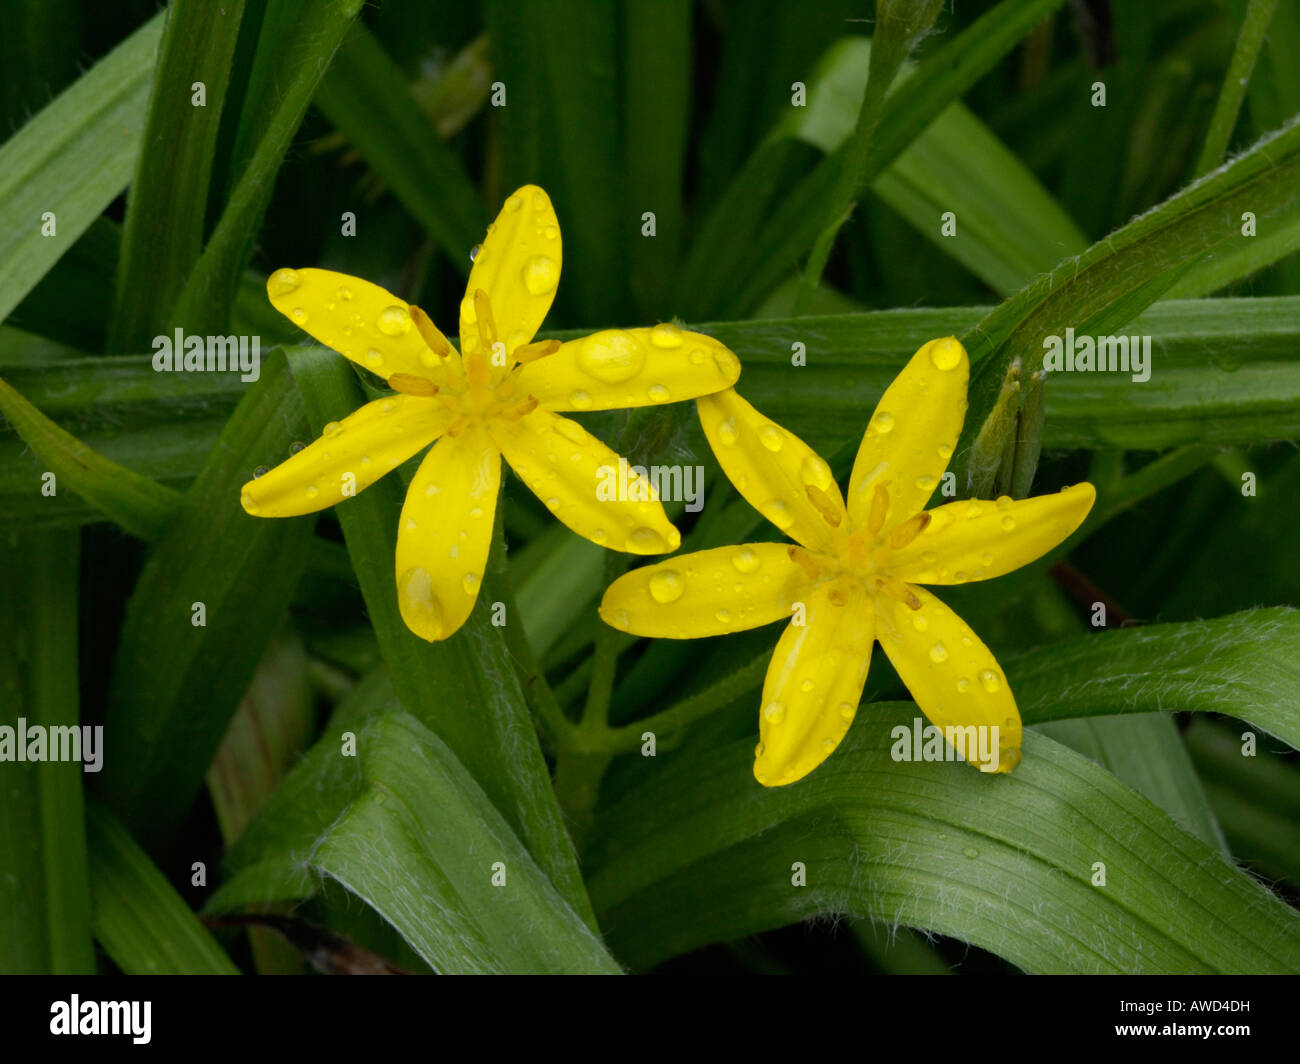 Common star grass (Hypoxis villosa) Stock Photo